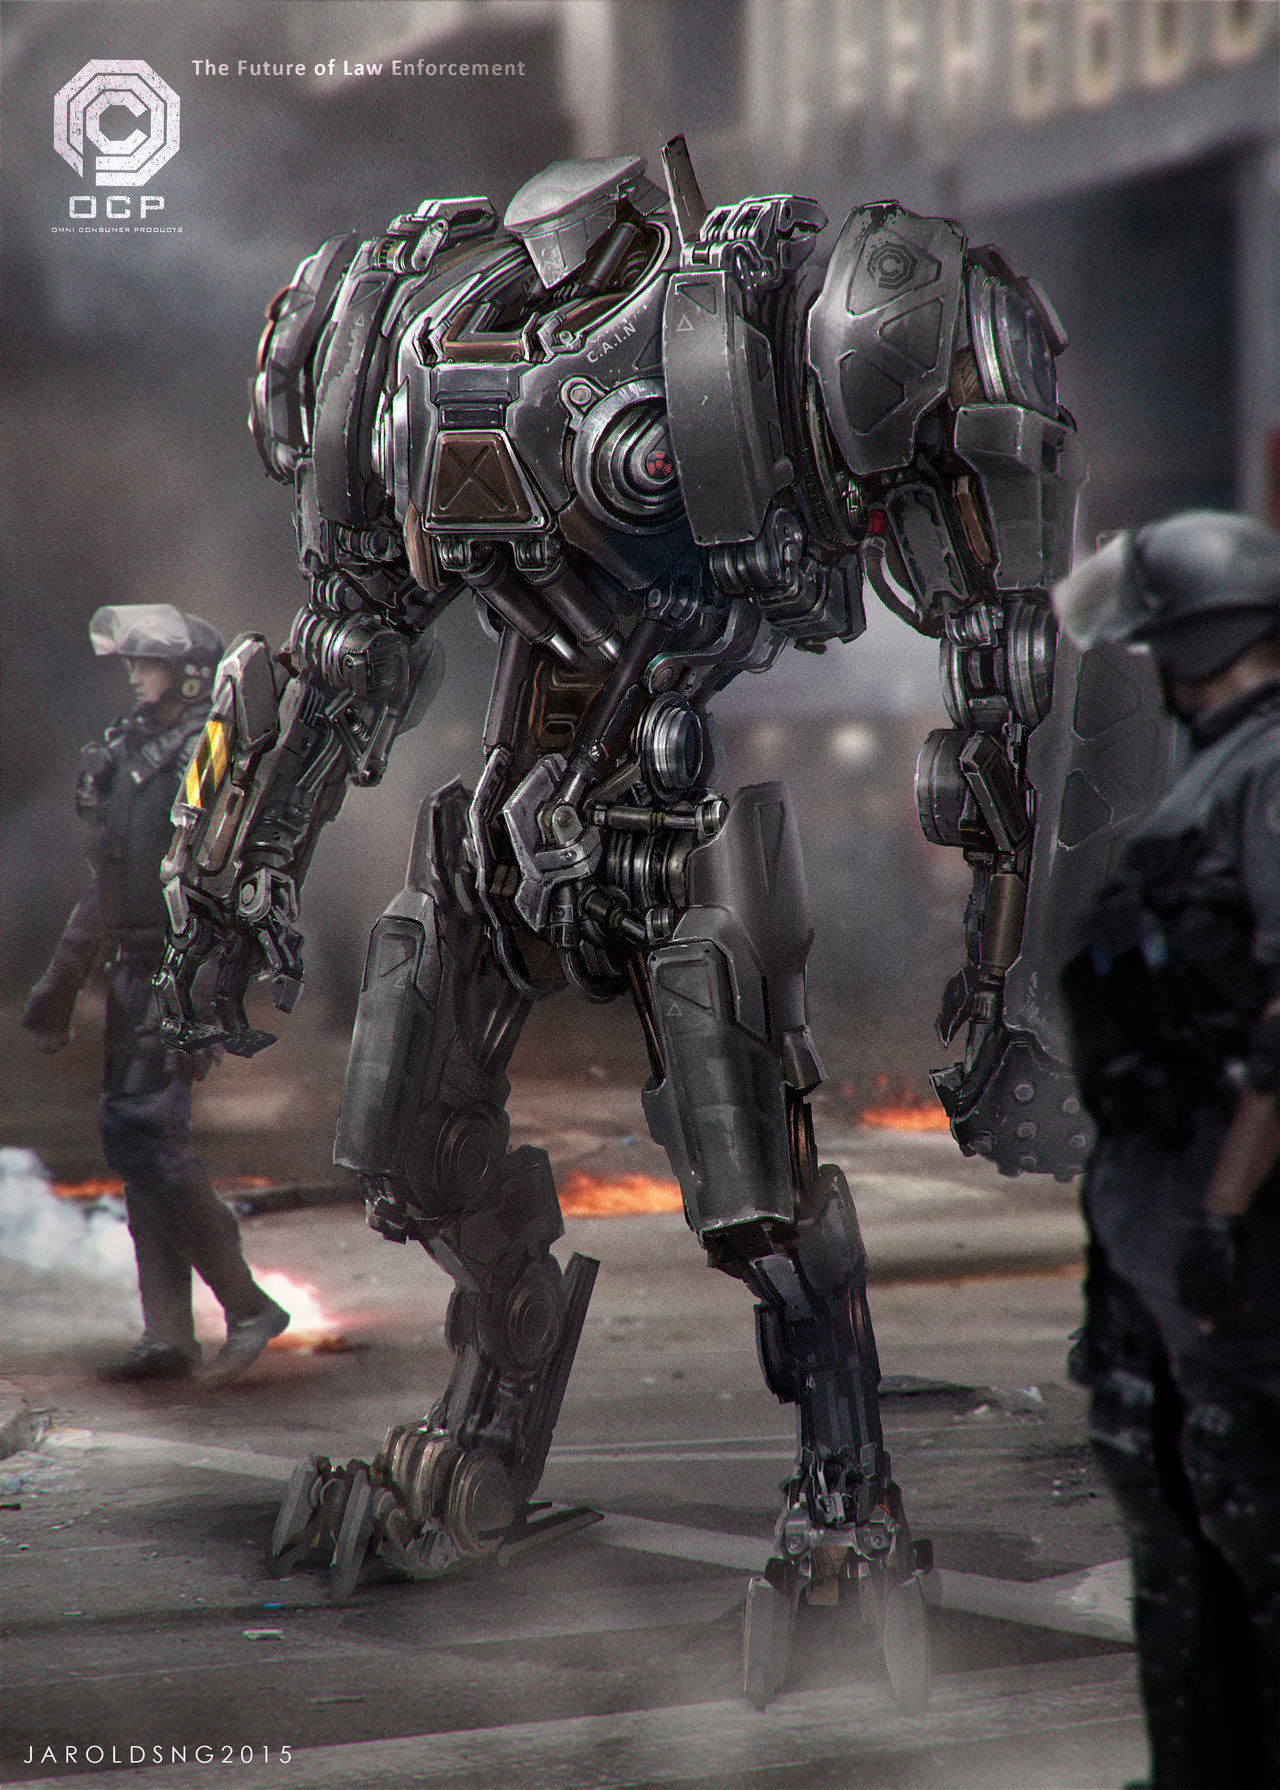 Jarold Sng RoboCop Robocop 2 Cyborg Machine Movies Artwork 1280x1790